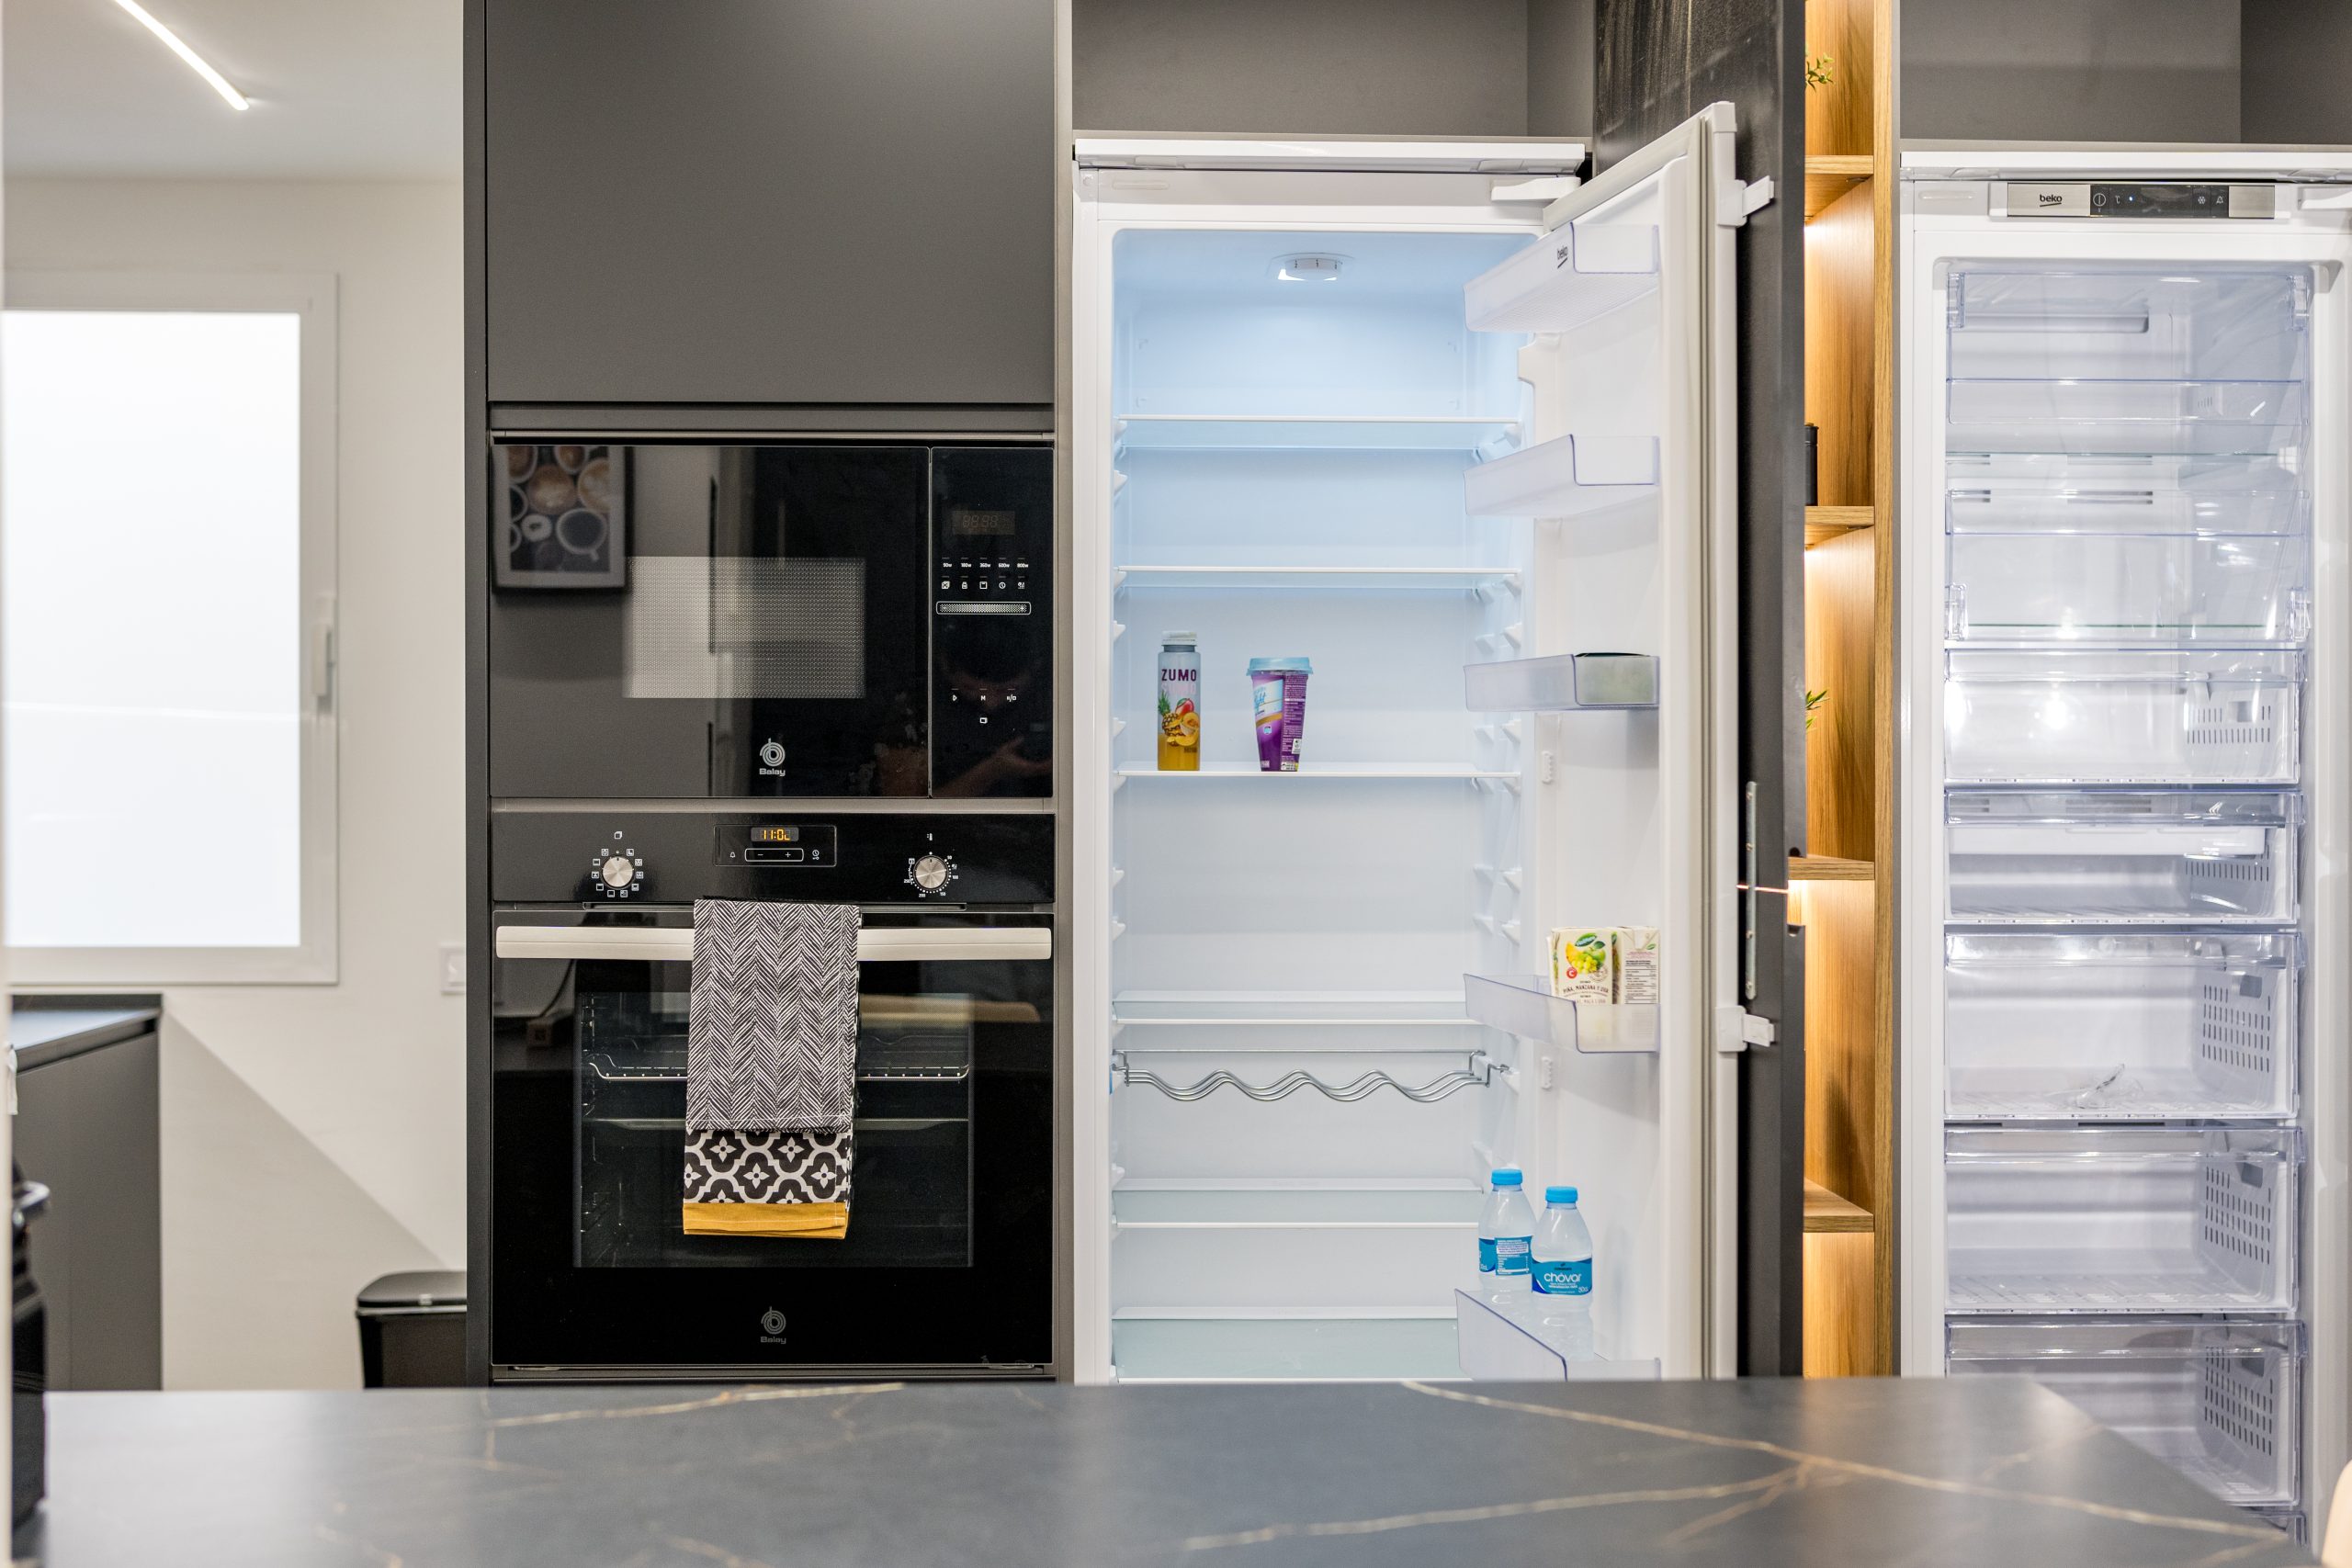 Millares - Apartment for rent in valencia fridge